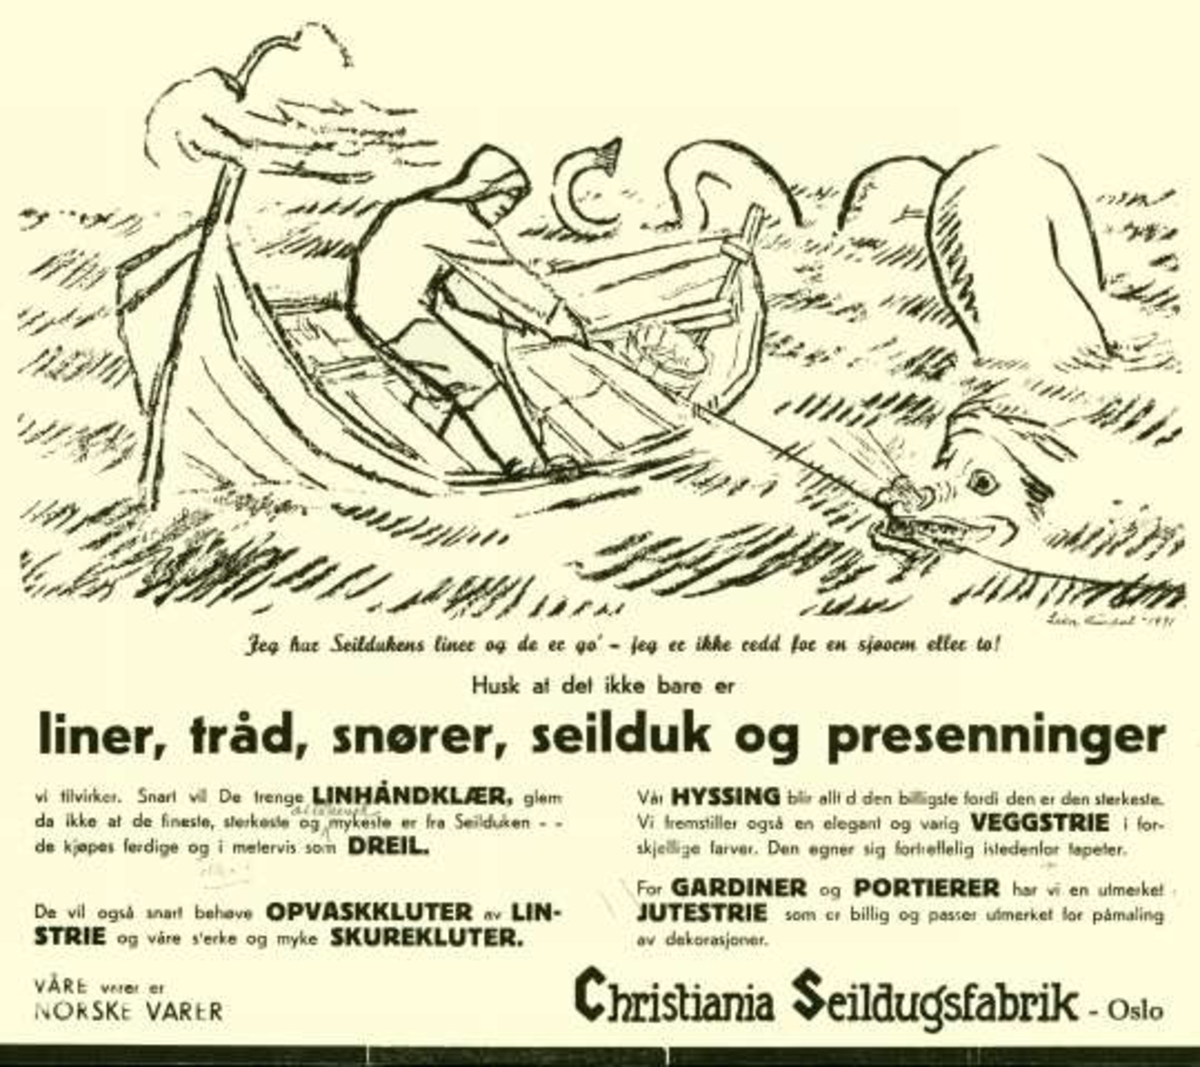 Christiania Seildugsfabrik, Oslo. Tegninger til reklamemateriell. Fisking av sjøorm.